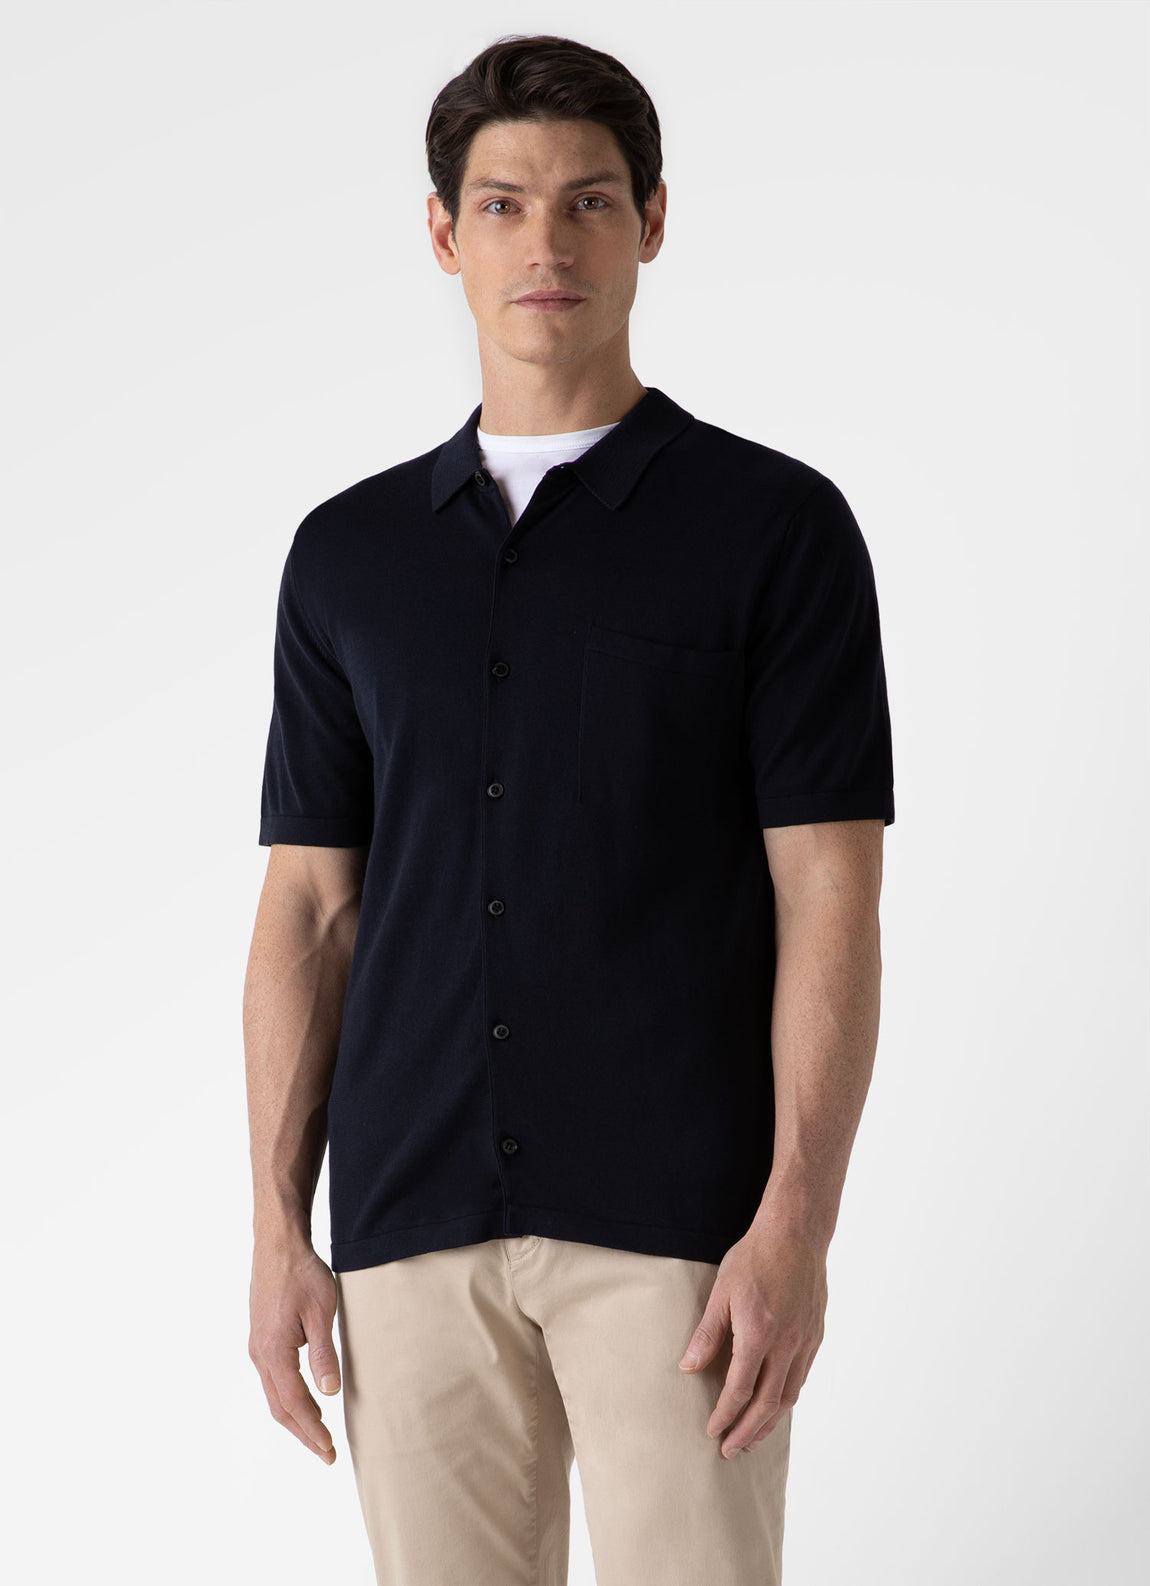 Men's Sea Island Cotton Knit Short Sleeve Shirt in Light Navy | Sunspel